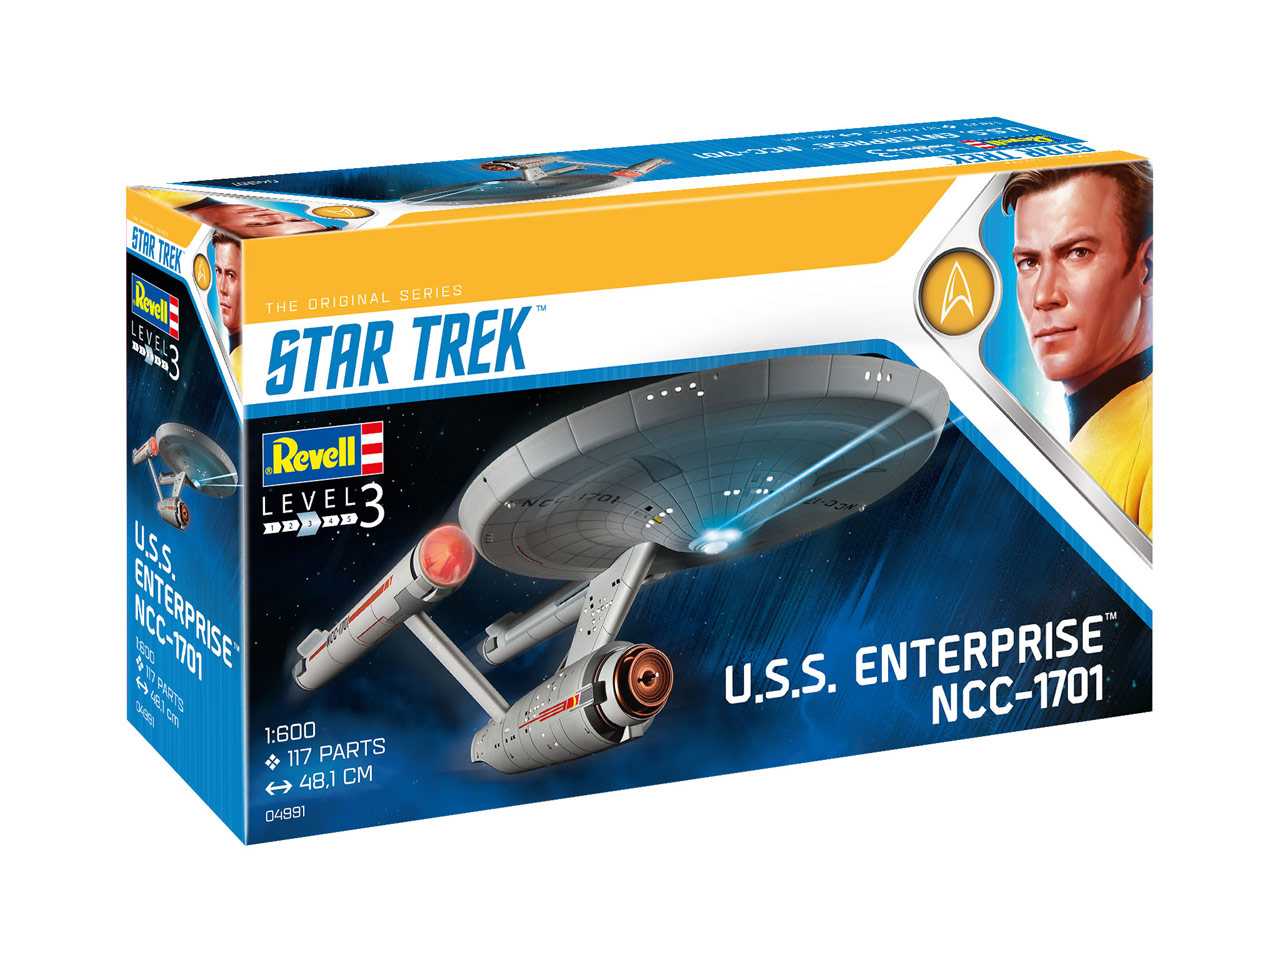 Revell Plastic ModelKit Star Trek 04991 - U.S.S. Enterprise NCC-1701 (TOS) (1:600)